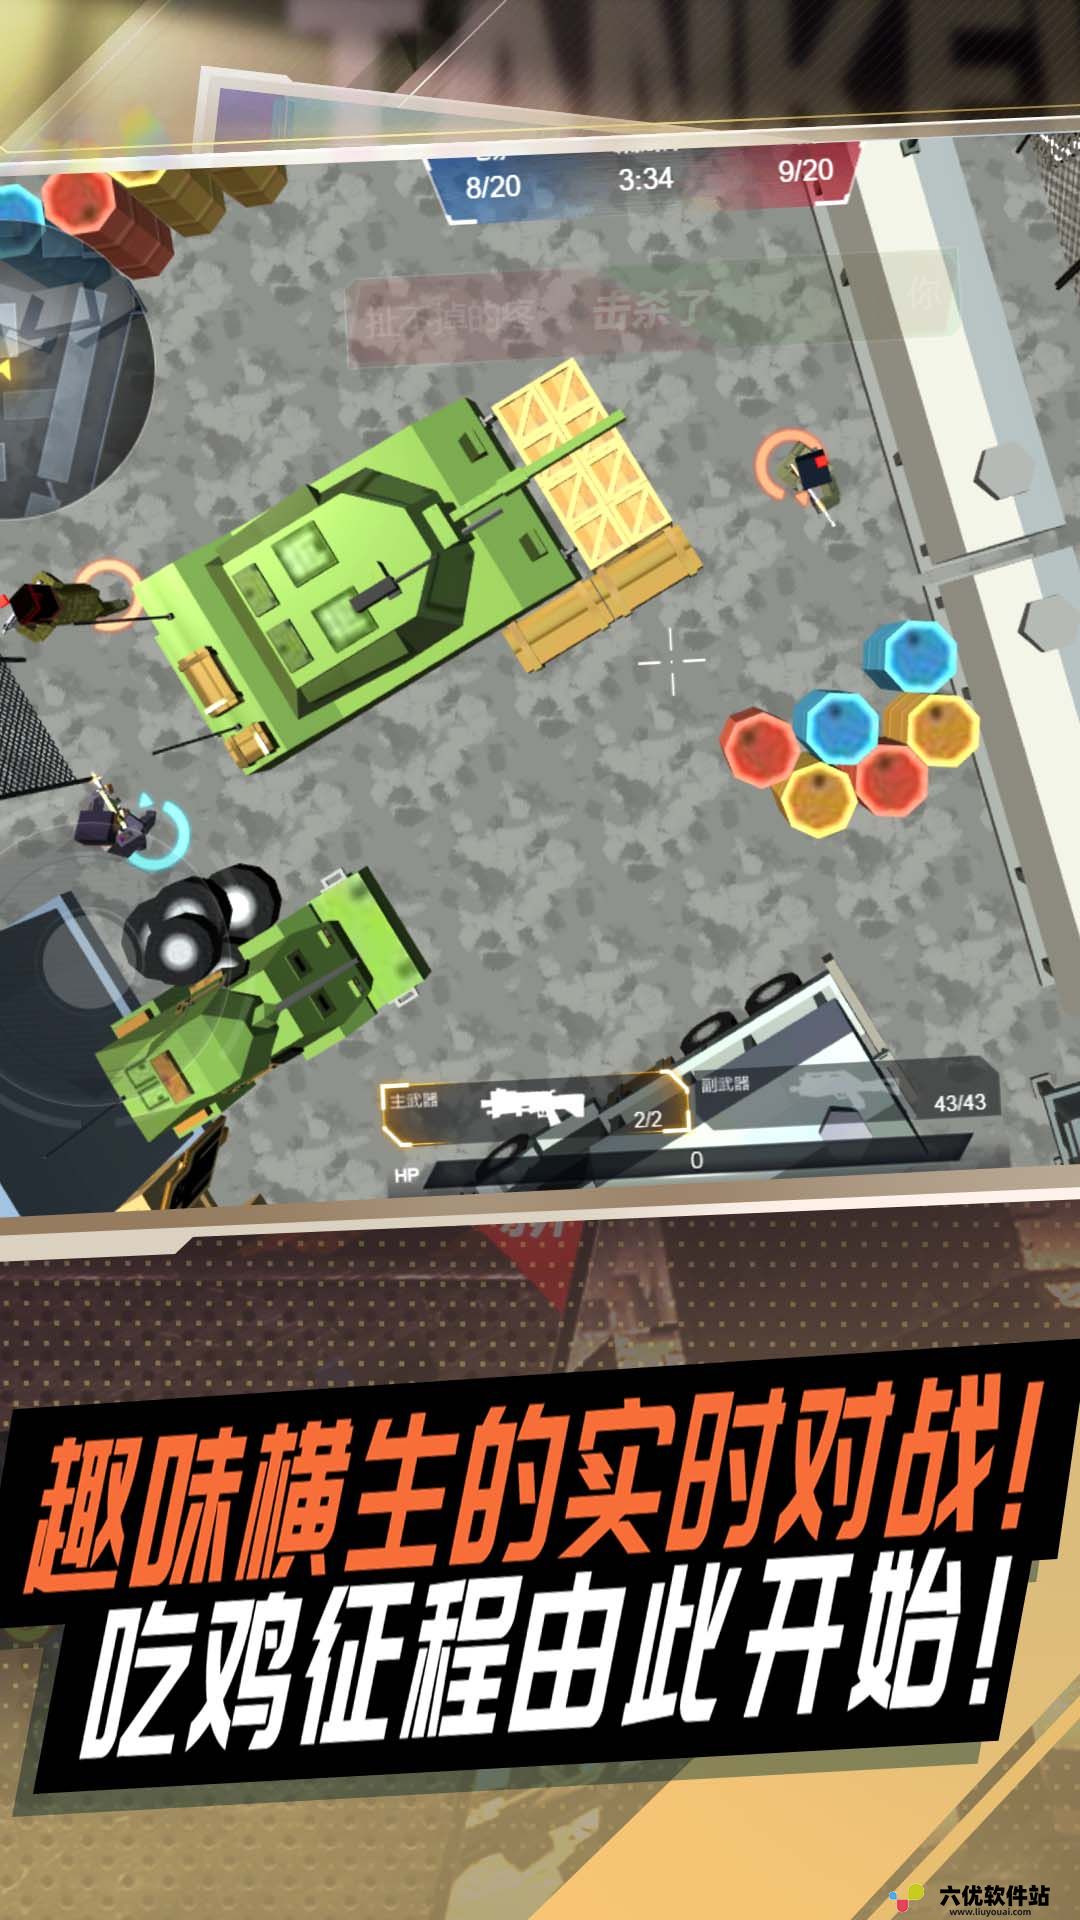 冷血狙击之王手机版中文版